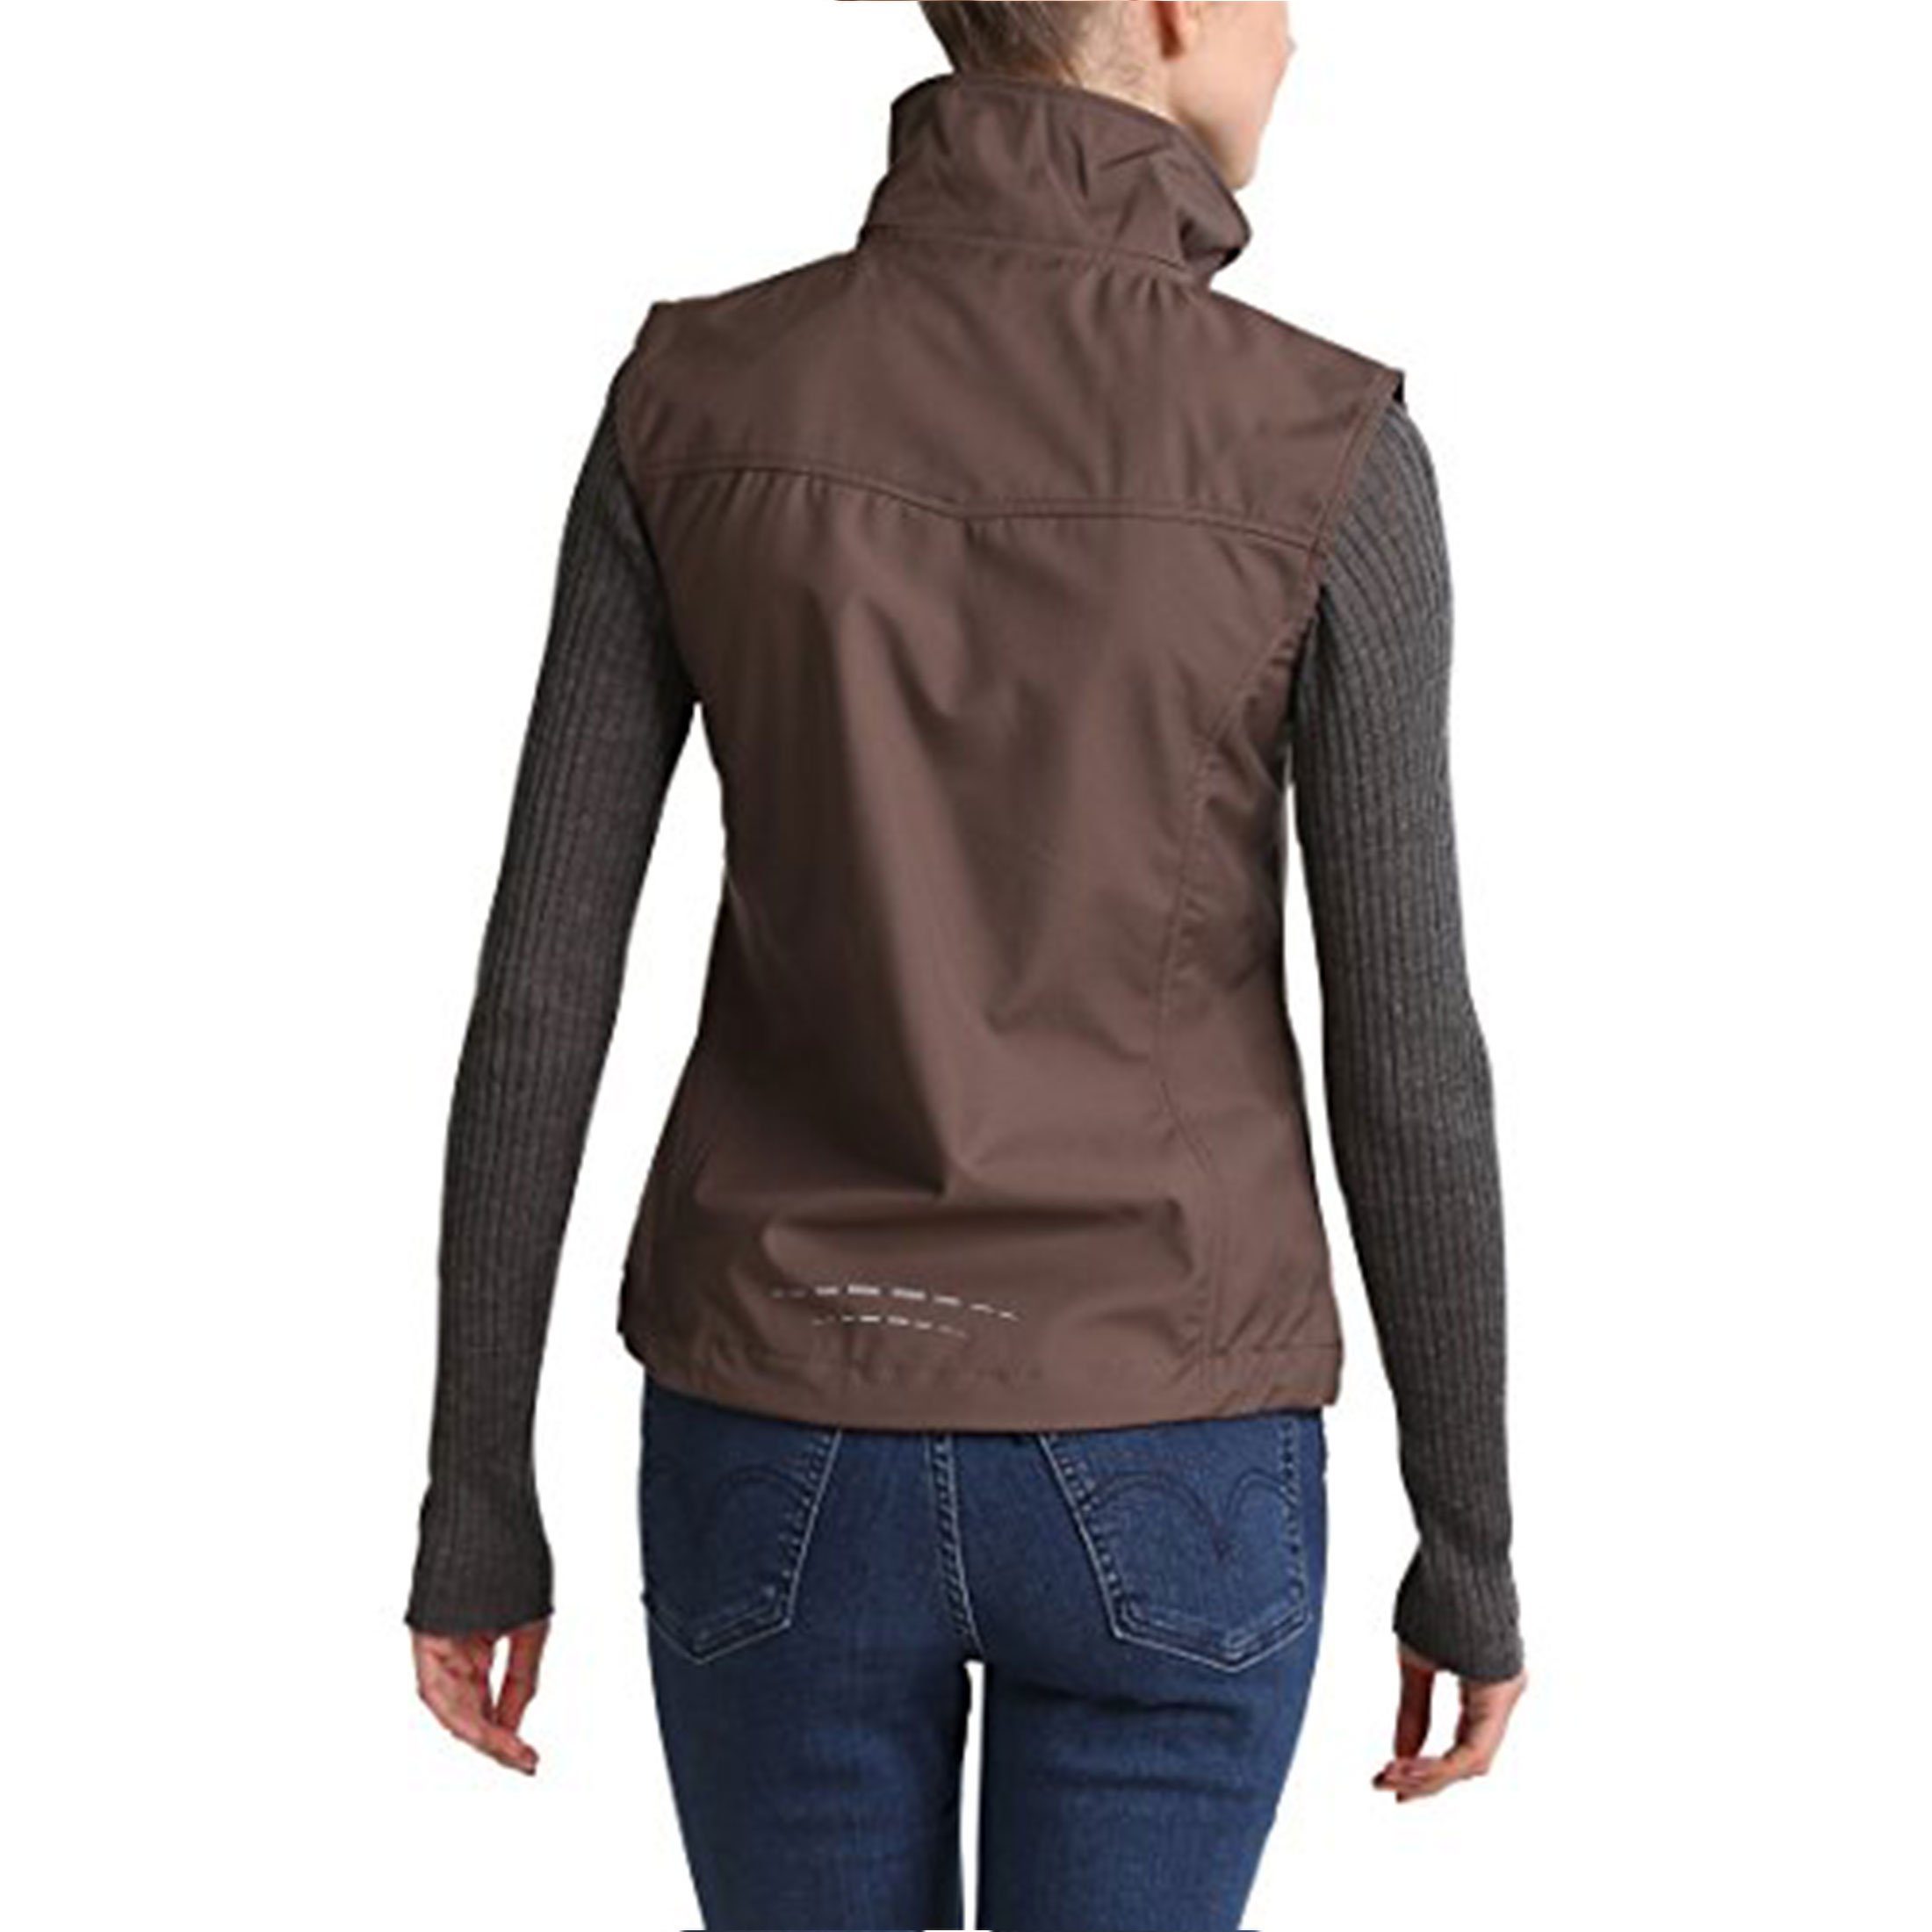 Zoomyo Softshellweste Piaffe anspruchsvolles Weste ärmellose Dunkel Jacke Damen Taupe/Türkis Napoleontasche, Design, Softshell